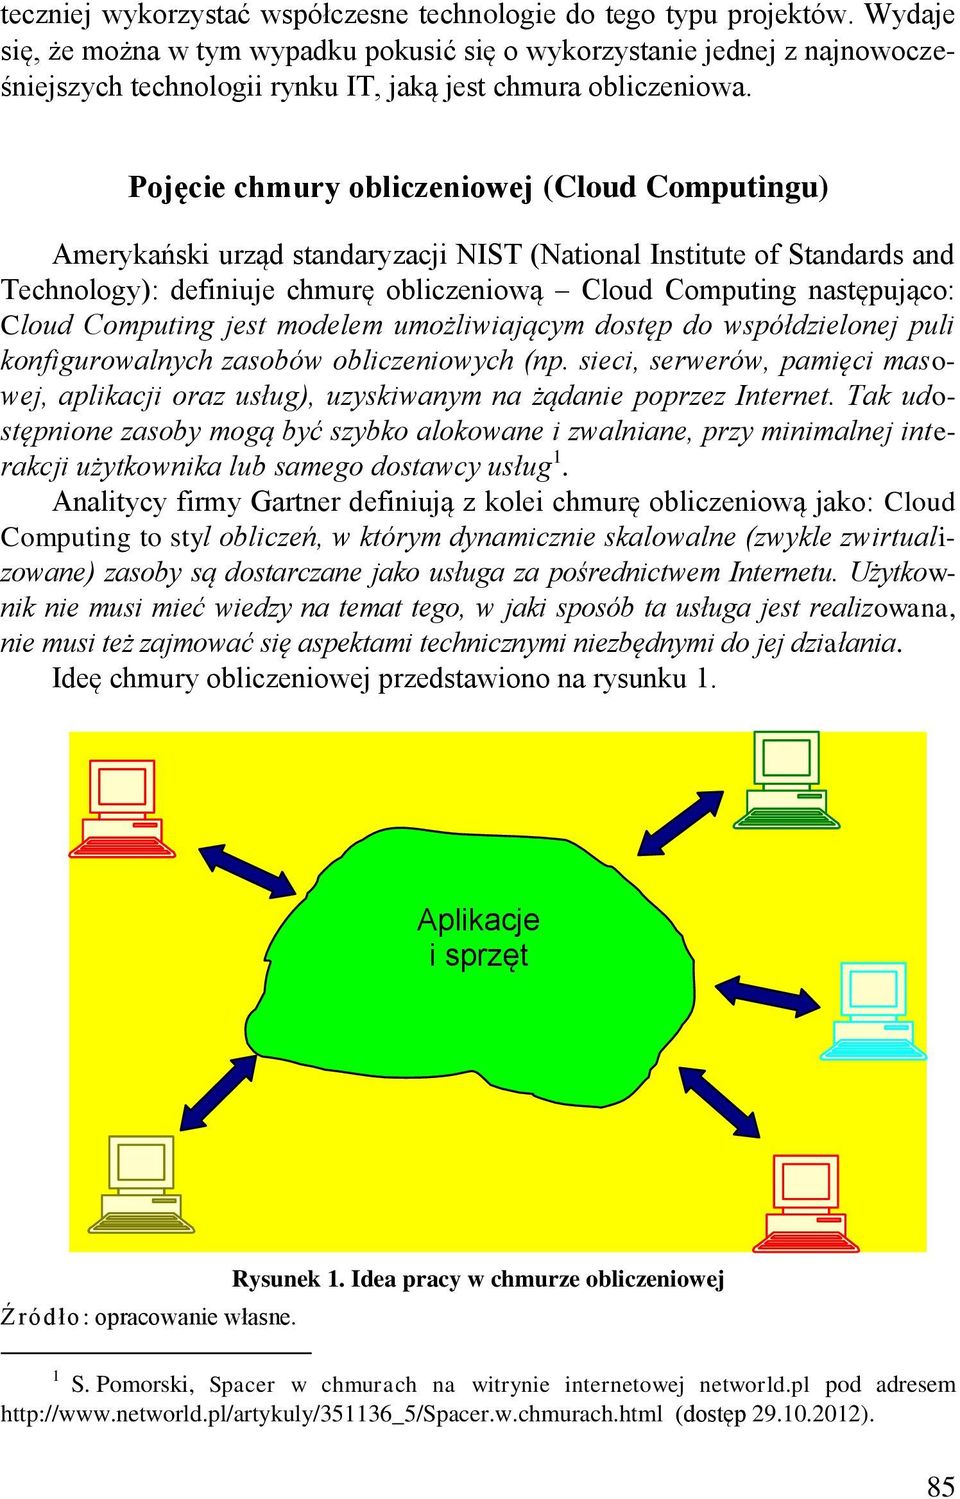 Pojęcie chmury obliczeniowej (Cloud Computingu) Amerykański urząd standaryzacji NIST (National Institute of Standards and Technology): definiuje chmurę obliczeniową Cloud Computing następująco: Cloud